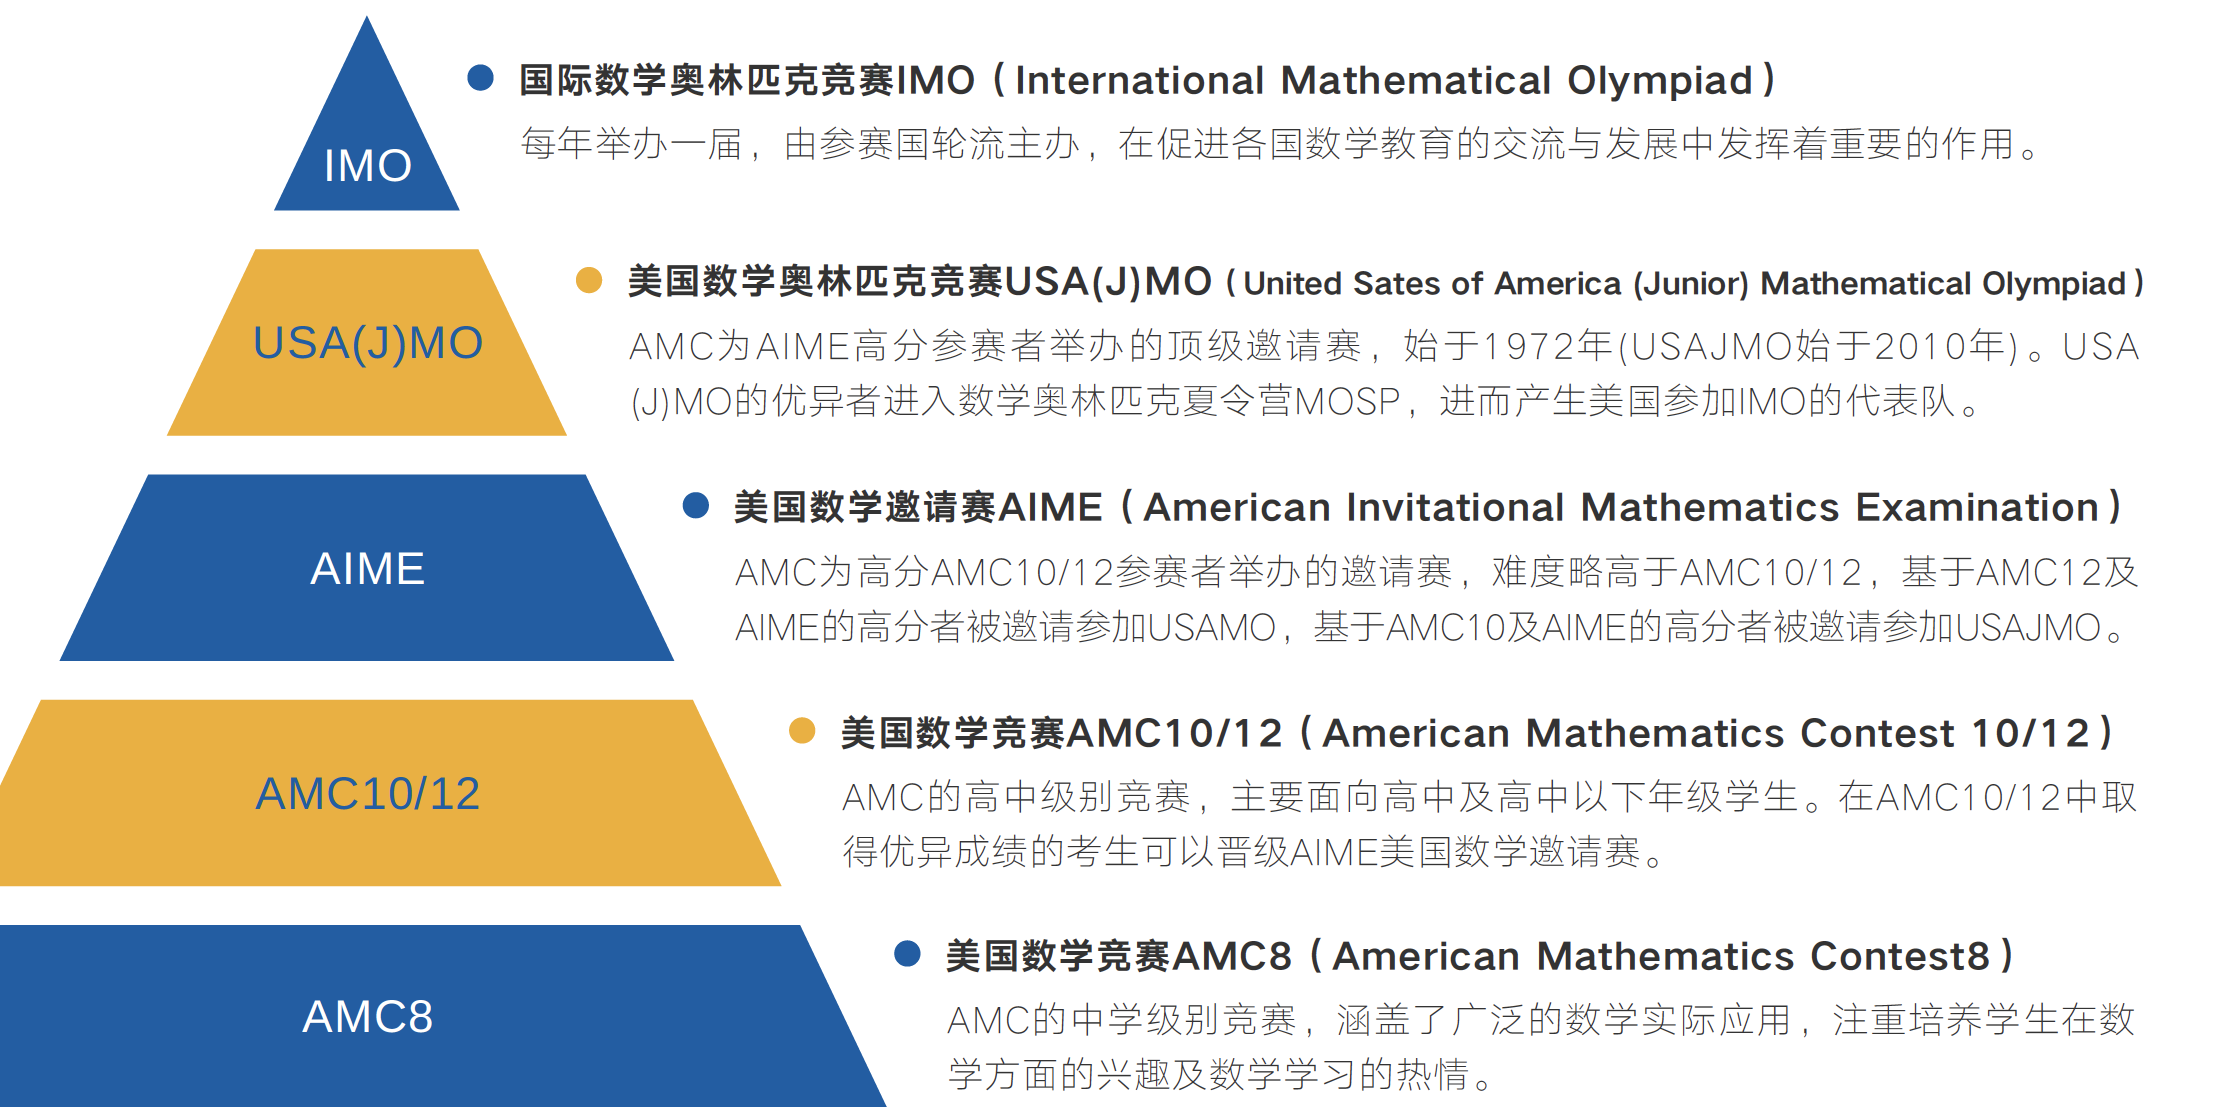 美国数学思维挑战(AMC) 体系解析